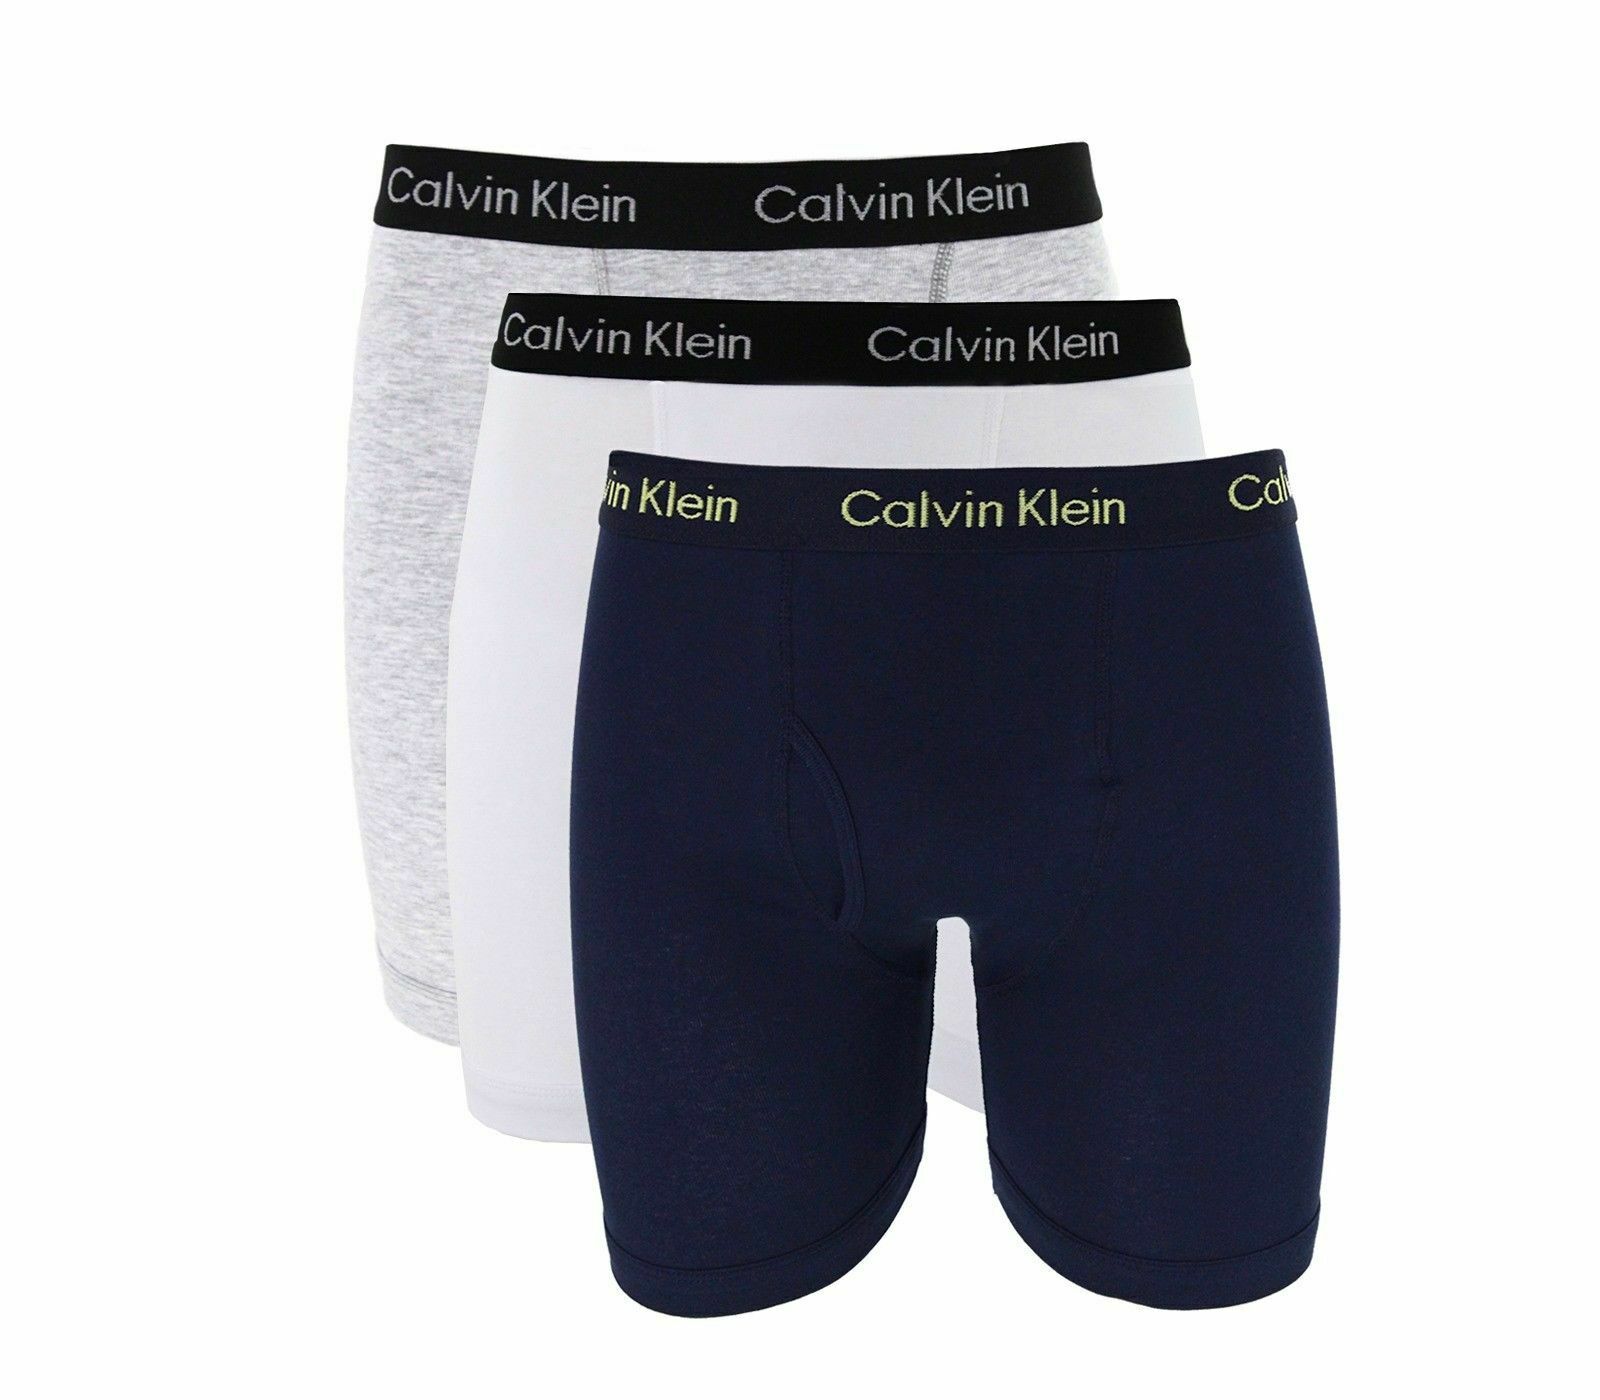 calvin klein comfort fit boxer briefs